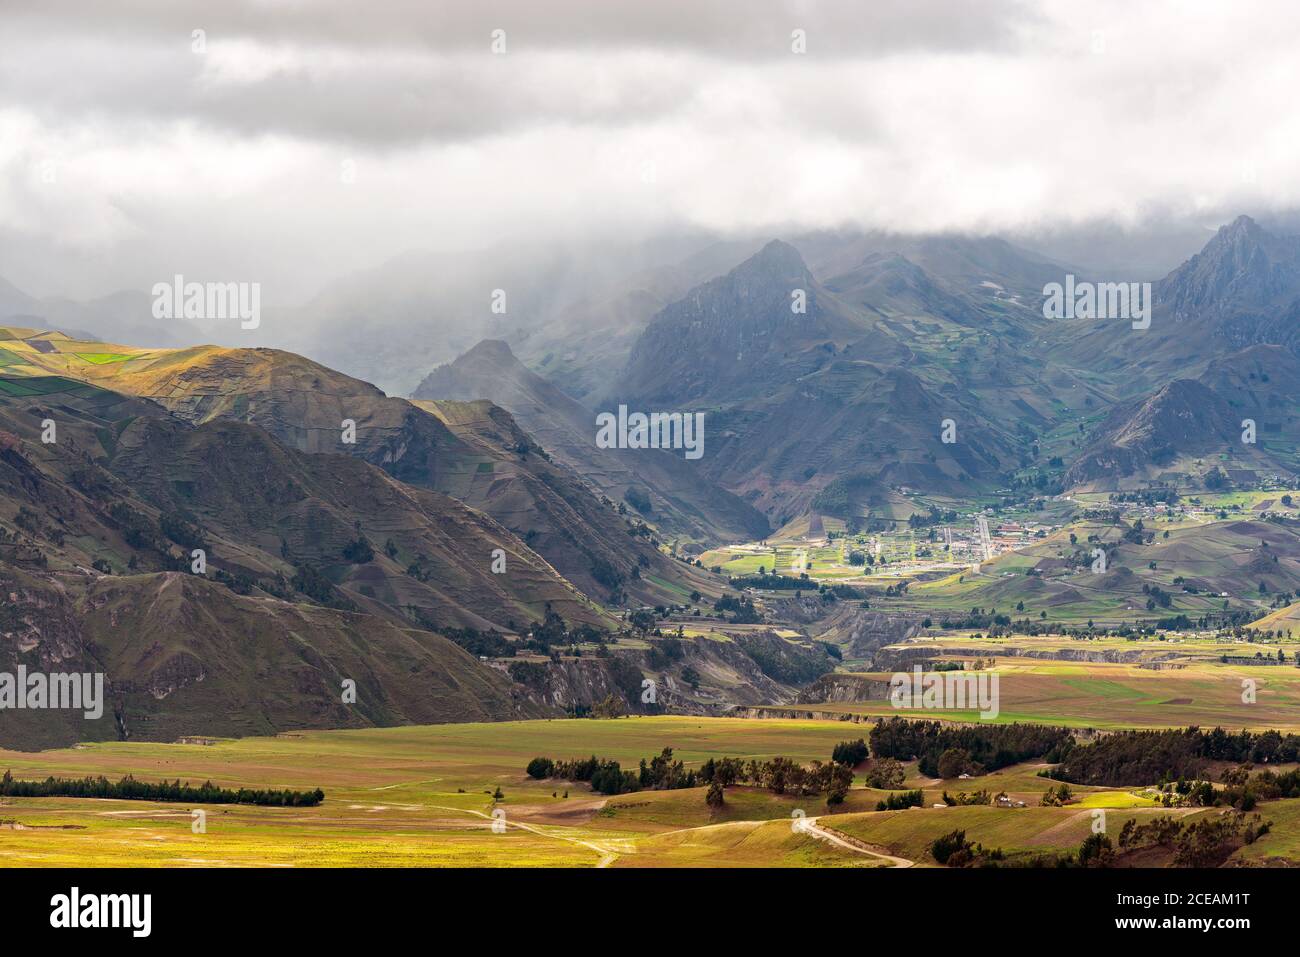 Andes mountain range landscape, Ecuador. Stock Photo